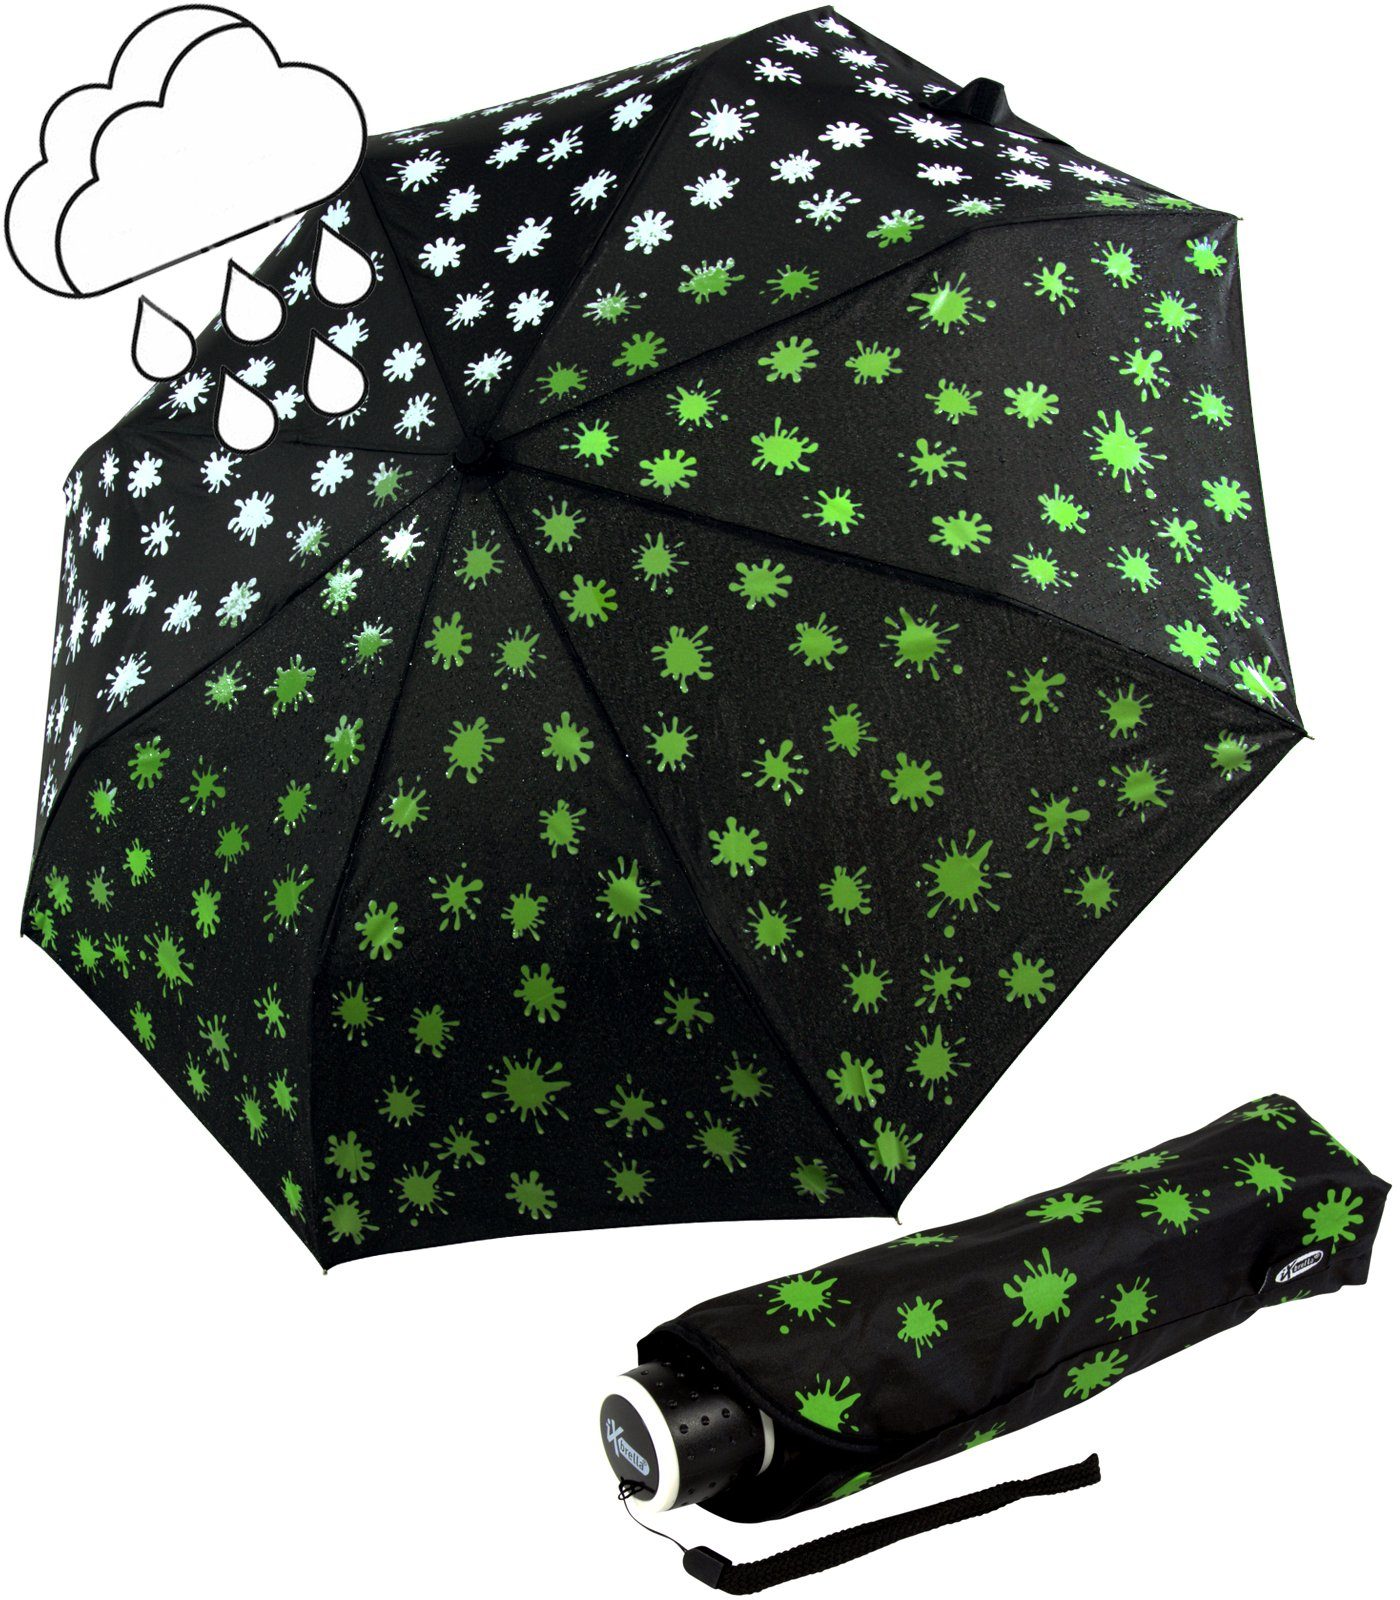 iX-brella Taschenregenschirm Mini Ultra Light - mit großem Dach - extra leicht, Farbänderung bei Nässe - Farbkleckse neon-grün schwarz-weiß-neongrün